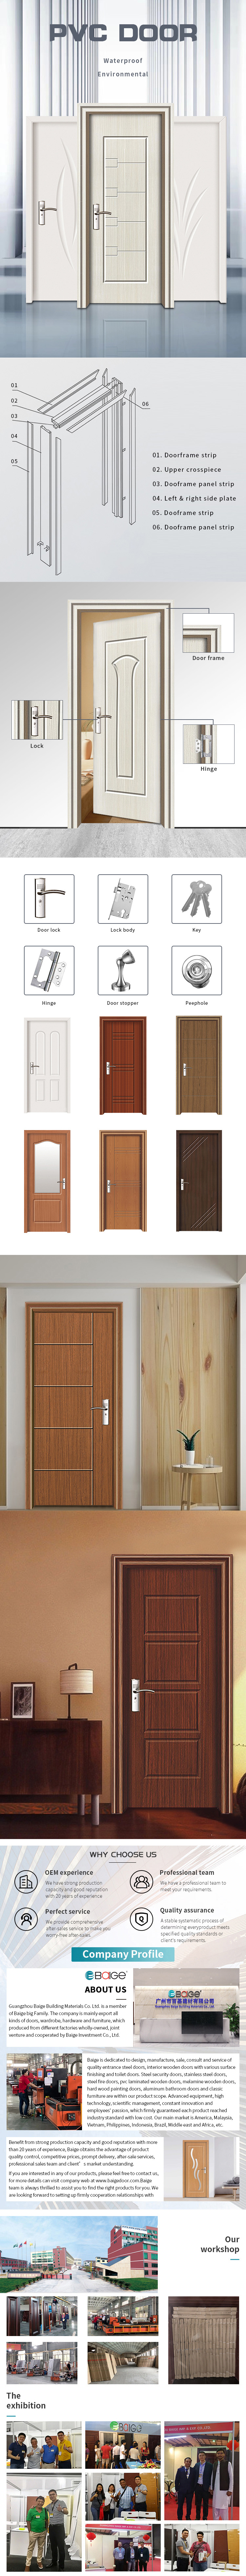 Material PVC Indoor MDF Flush Door Prehung Interior Doors MDF PVC Solid Wood Interior Wooden Door for House